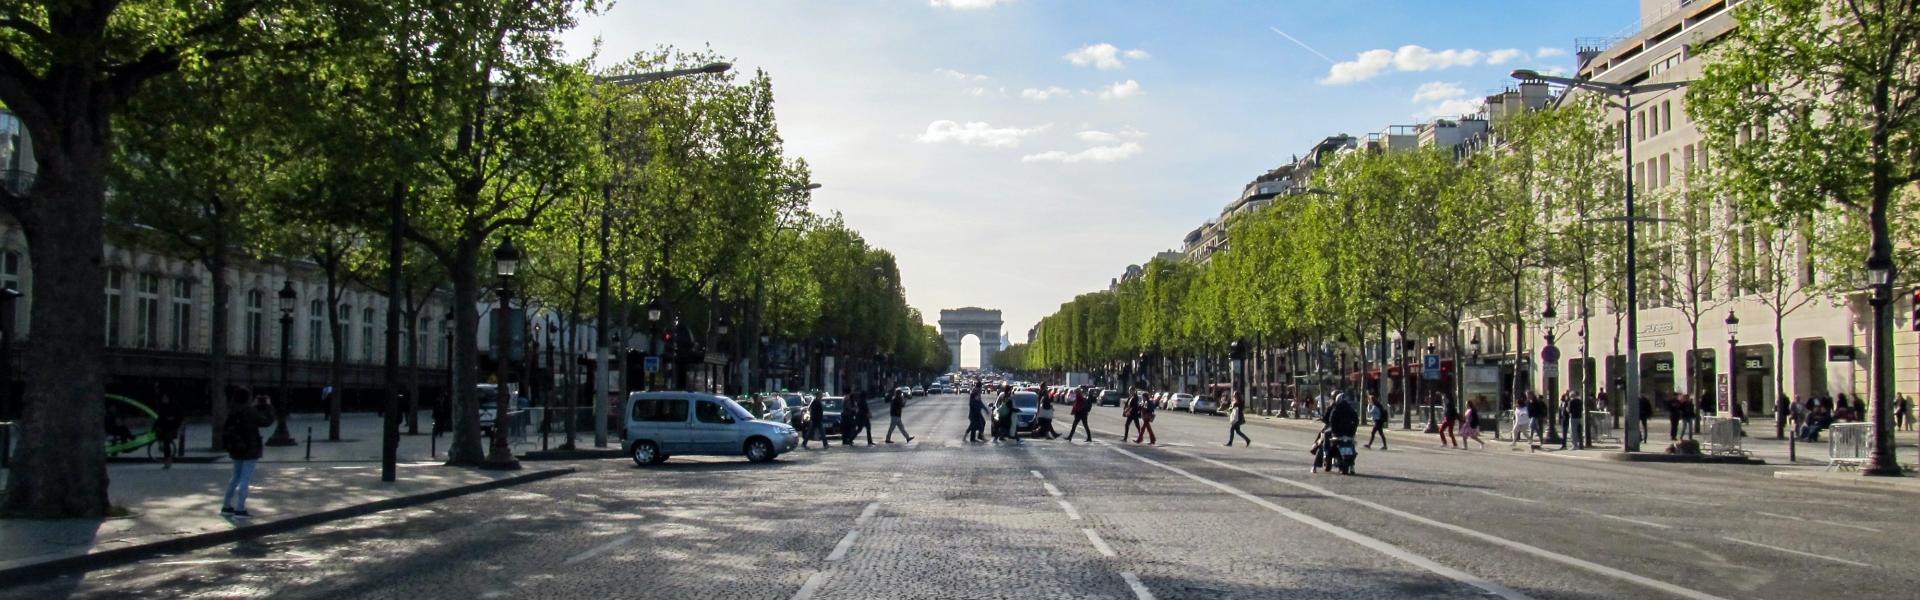 Locations de vacances et appartements près des Champs-Élysées - Wimdu